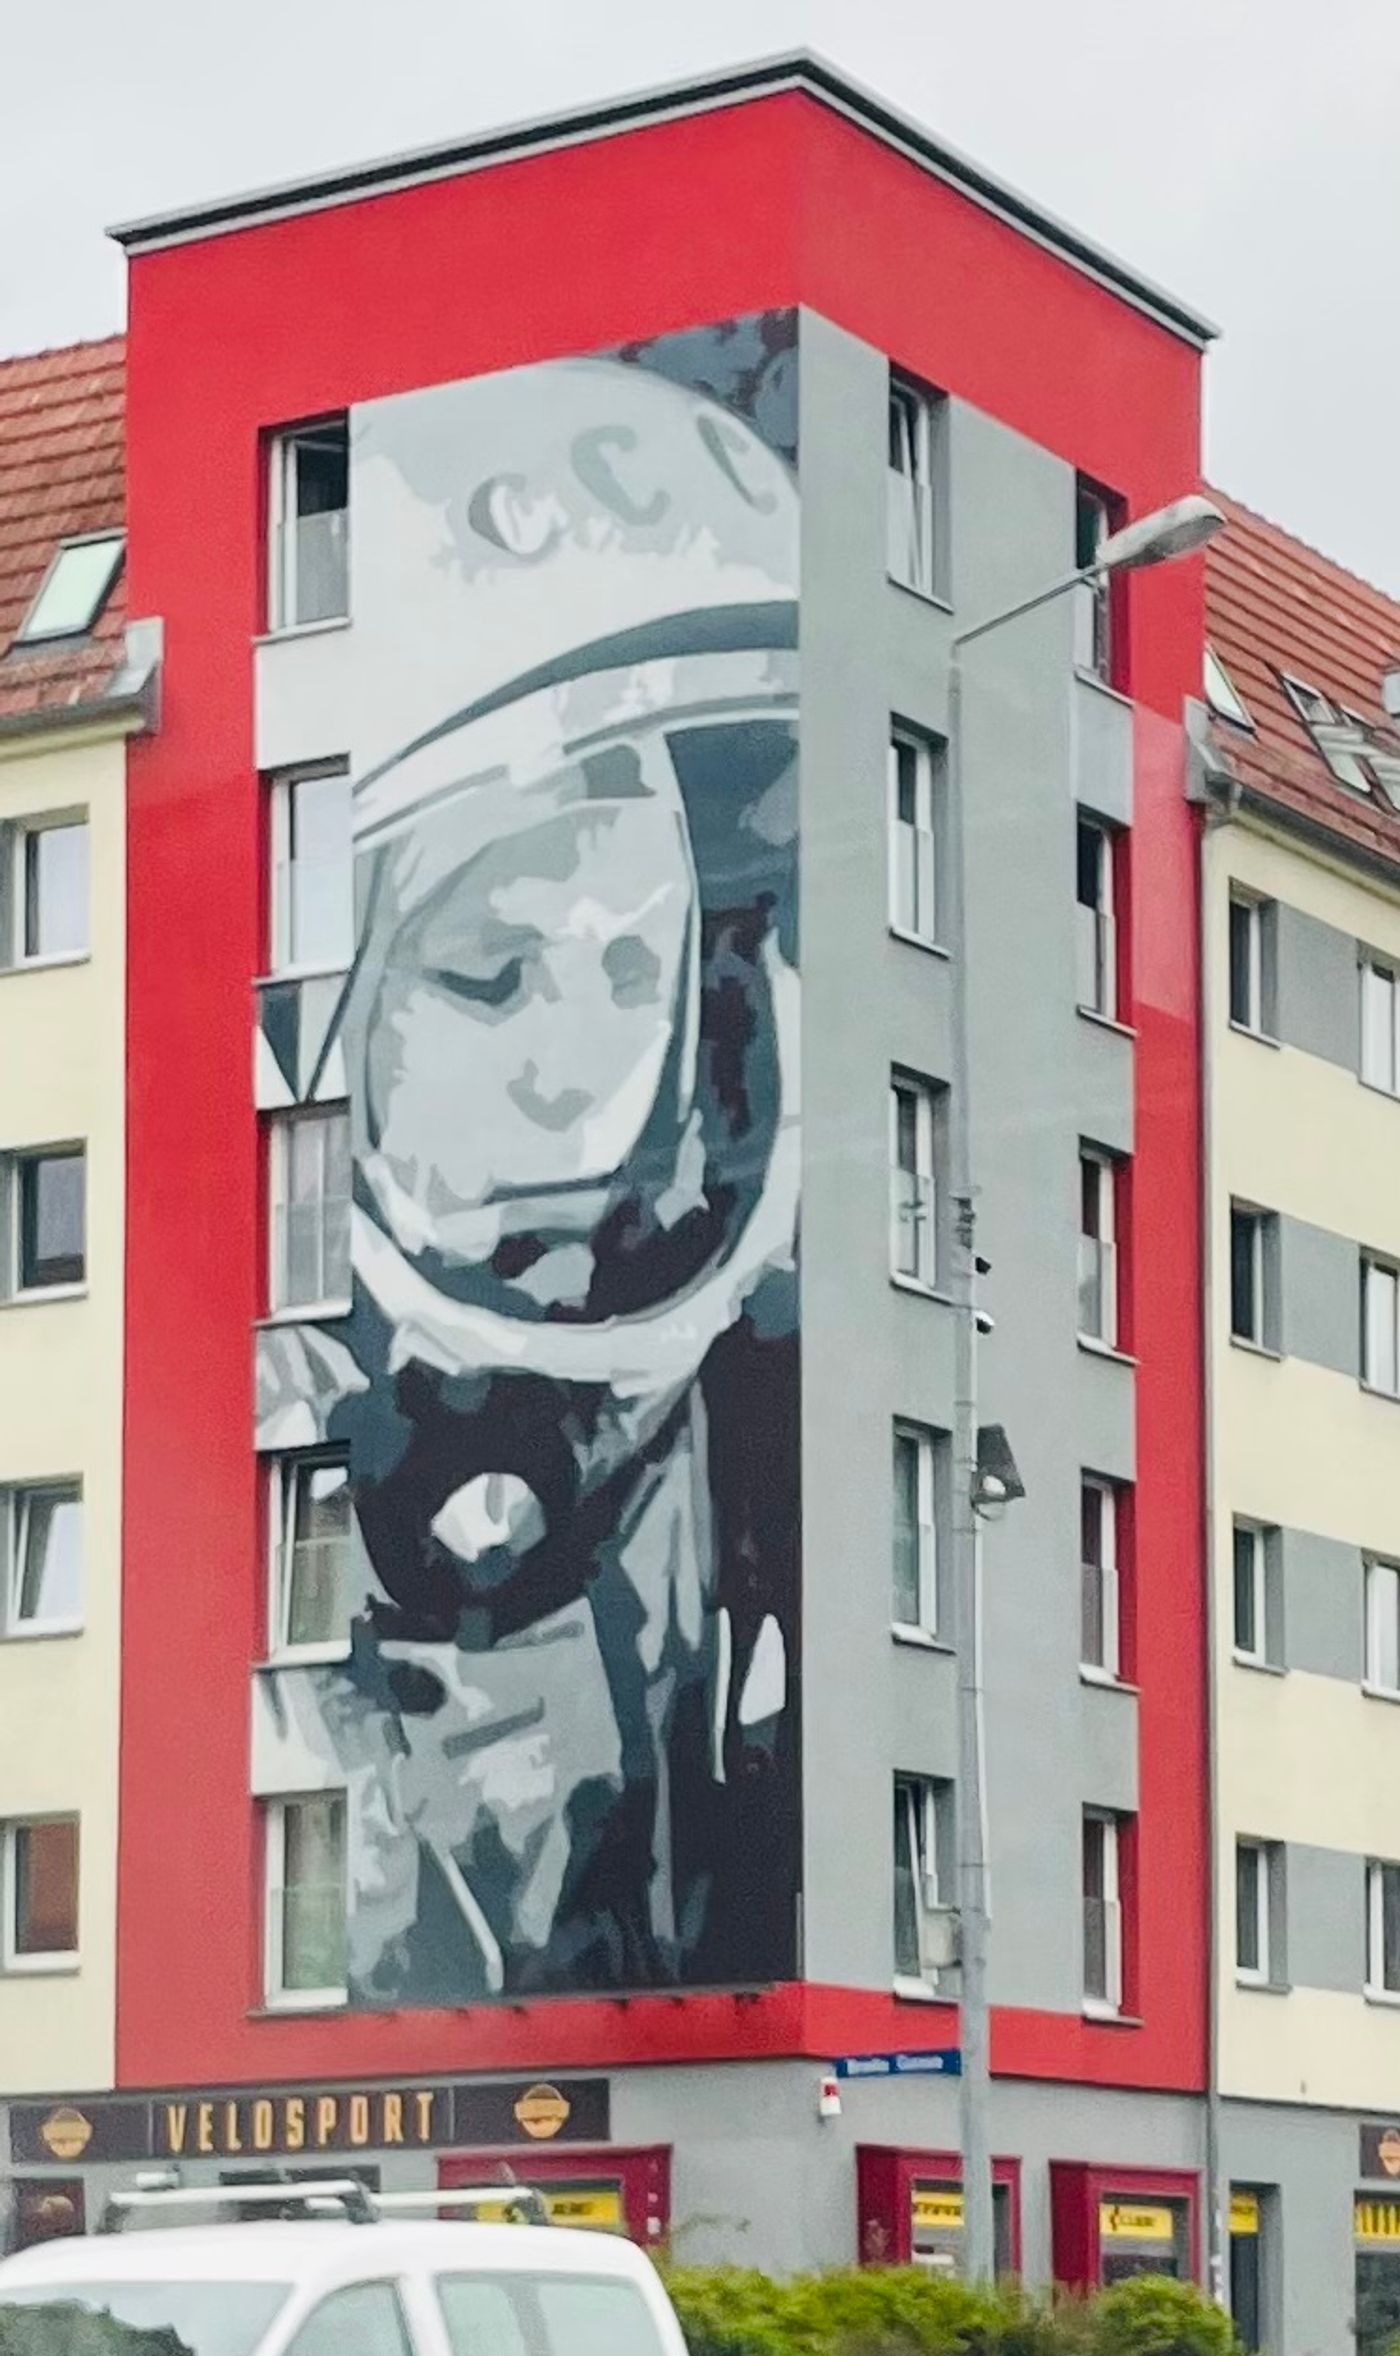 Bunte Street Art und Architektur bestaunen